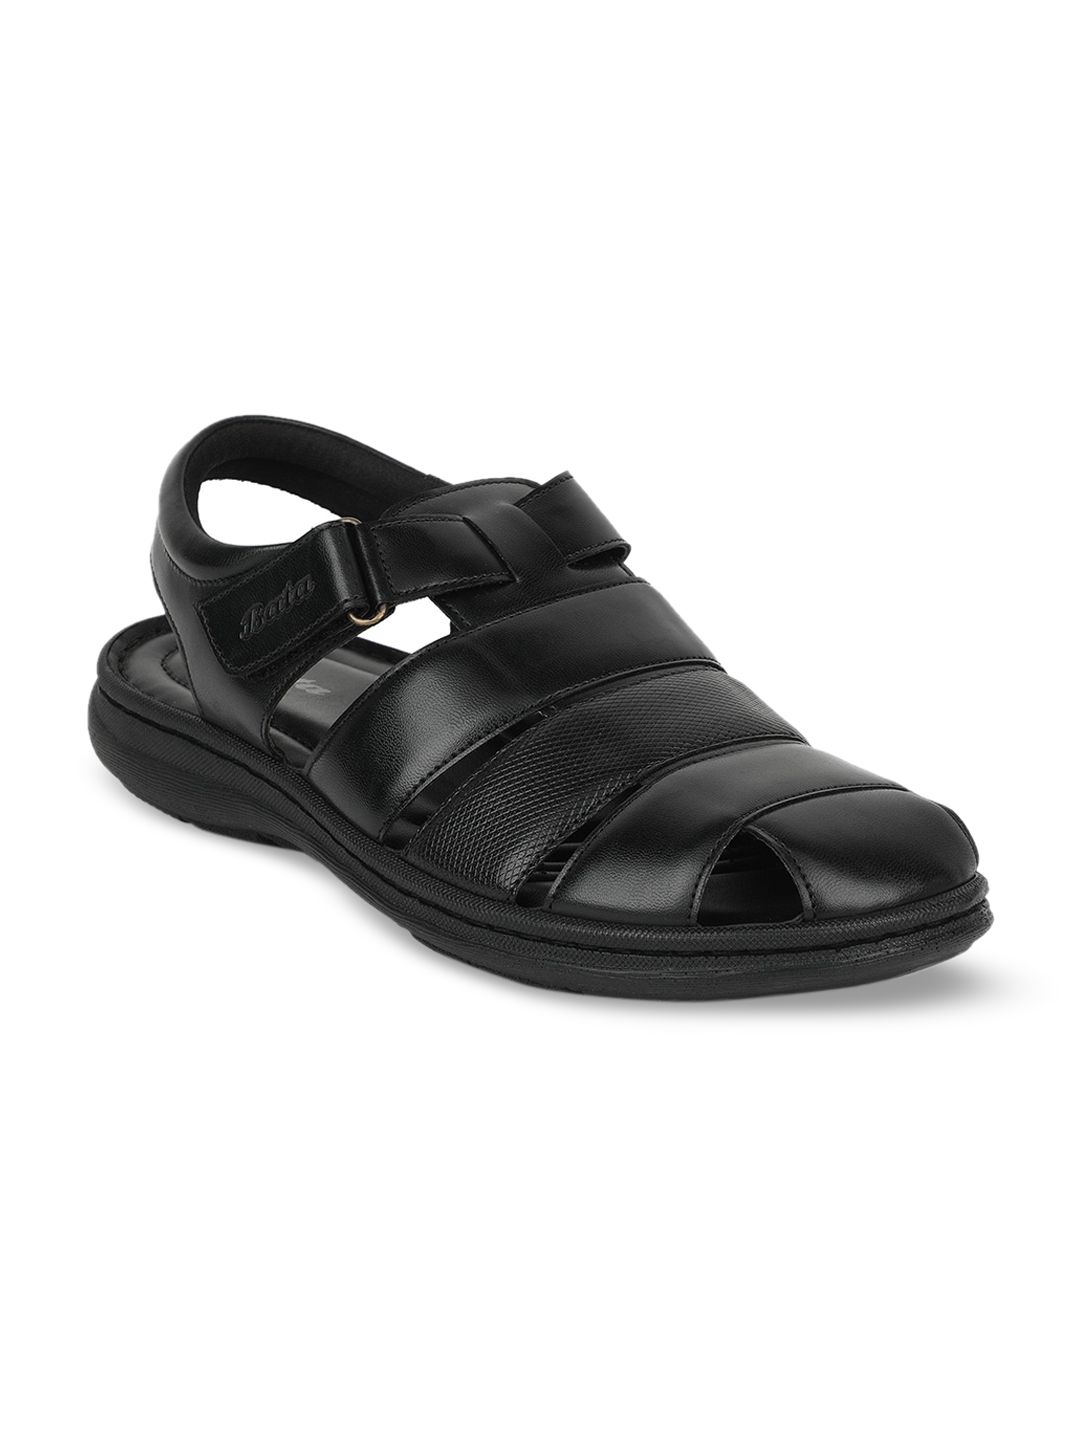 Bata Men Black Sandals